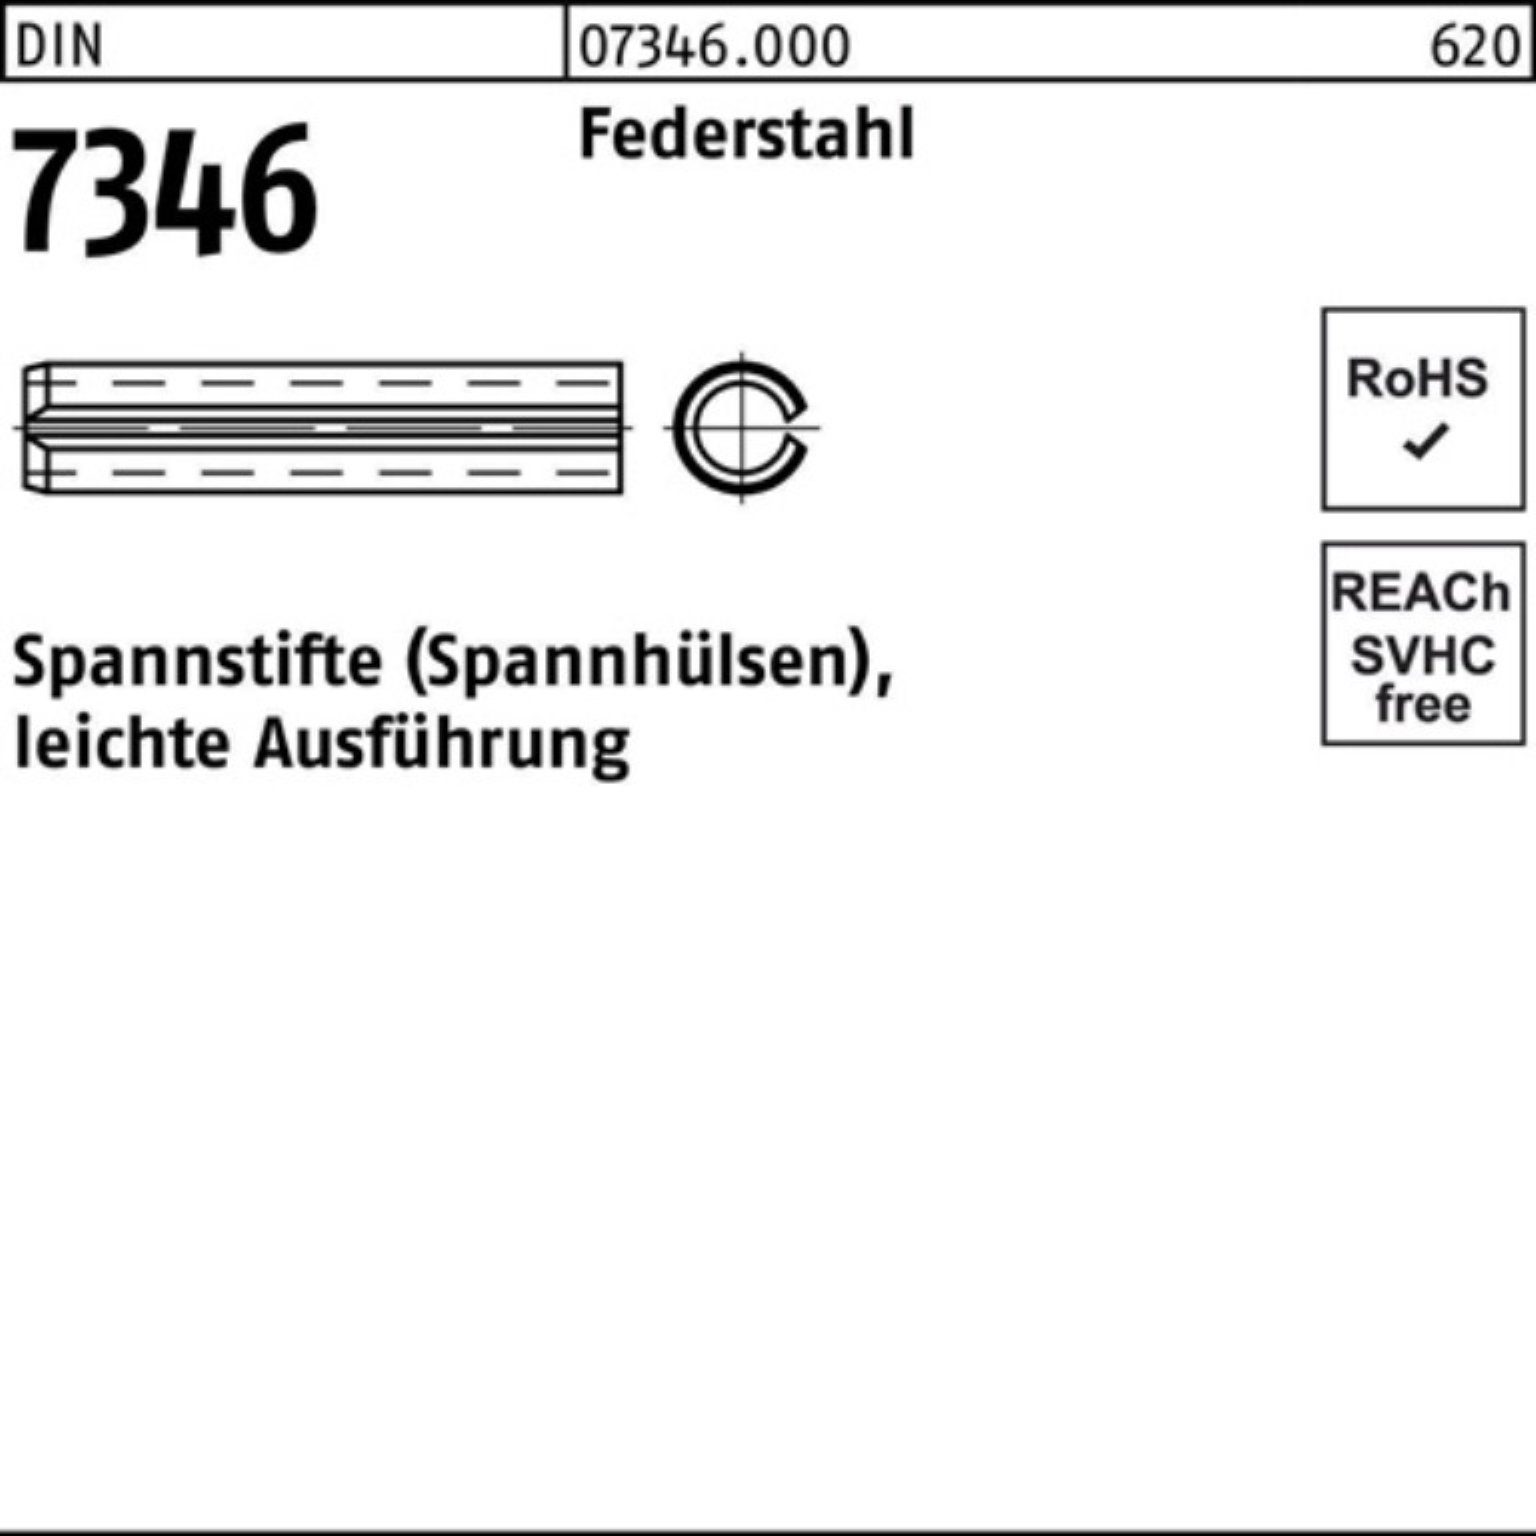 12 200er Federstahl DIN Pack 13337 7346/ISO Spannstift Reyher Spannstift Ausf 3x leichte